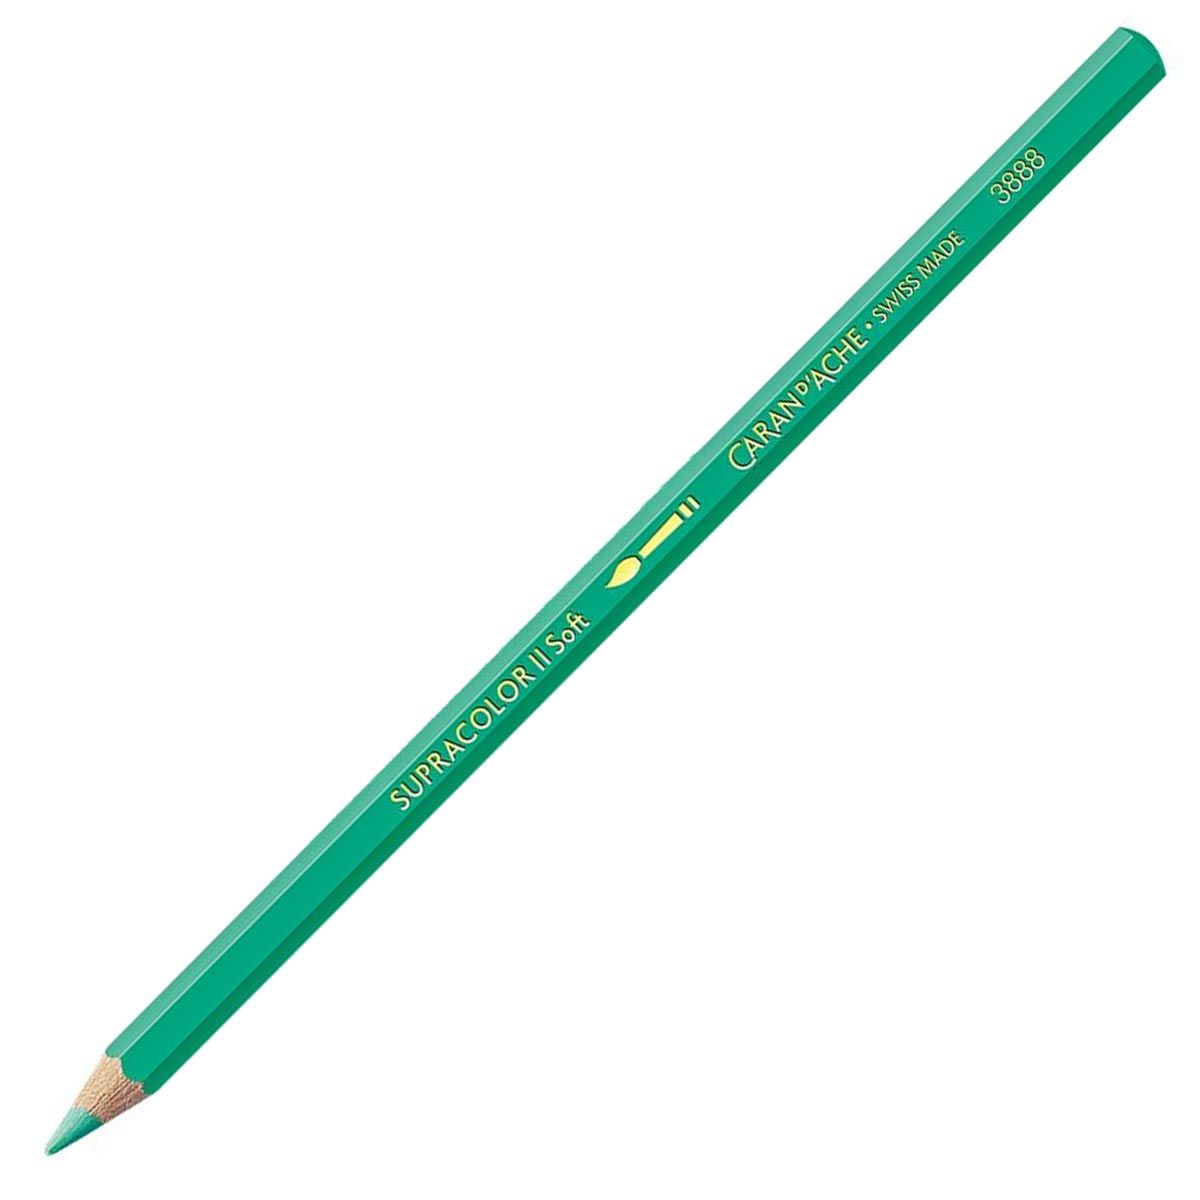 Caran d'Ache Supracolor ll Soft Aquarelle Pencil Greyish Green 215